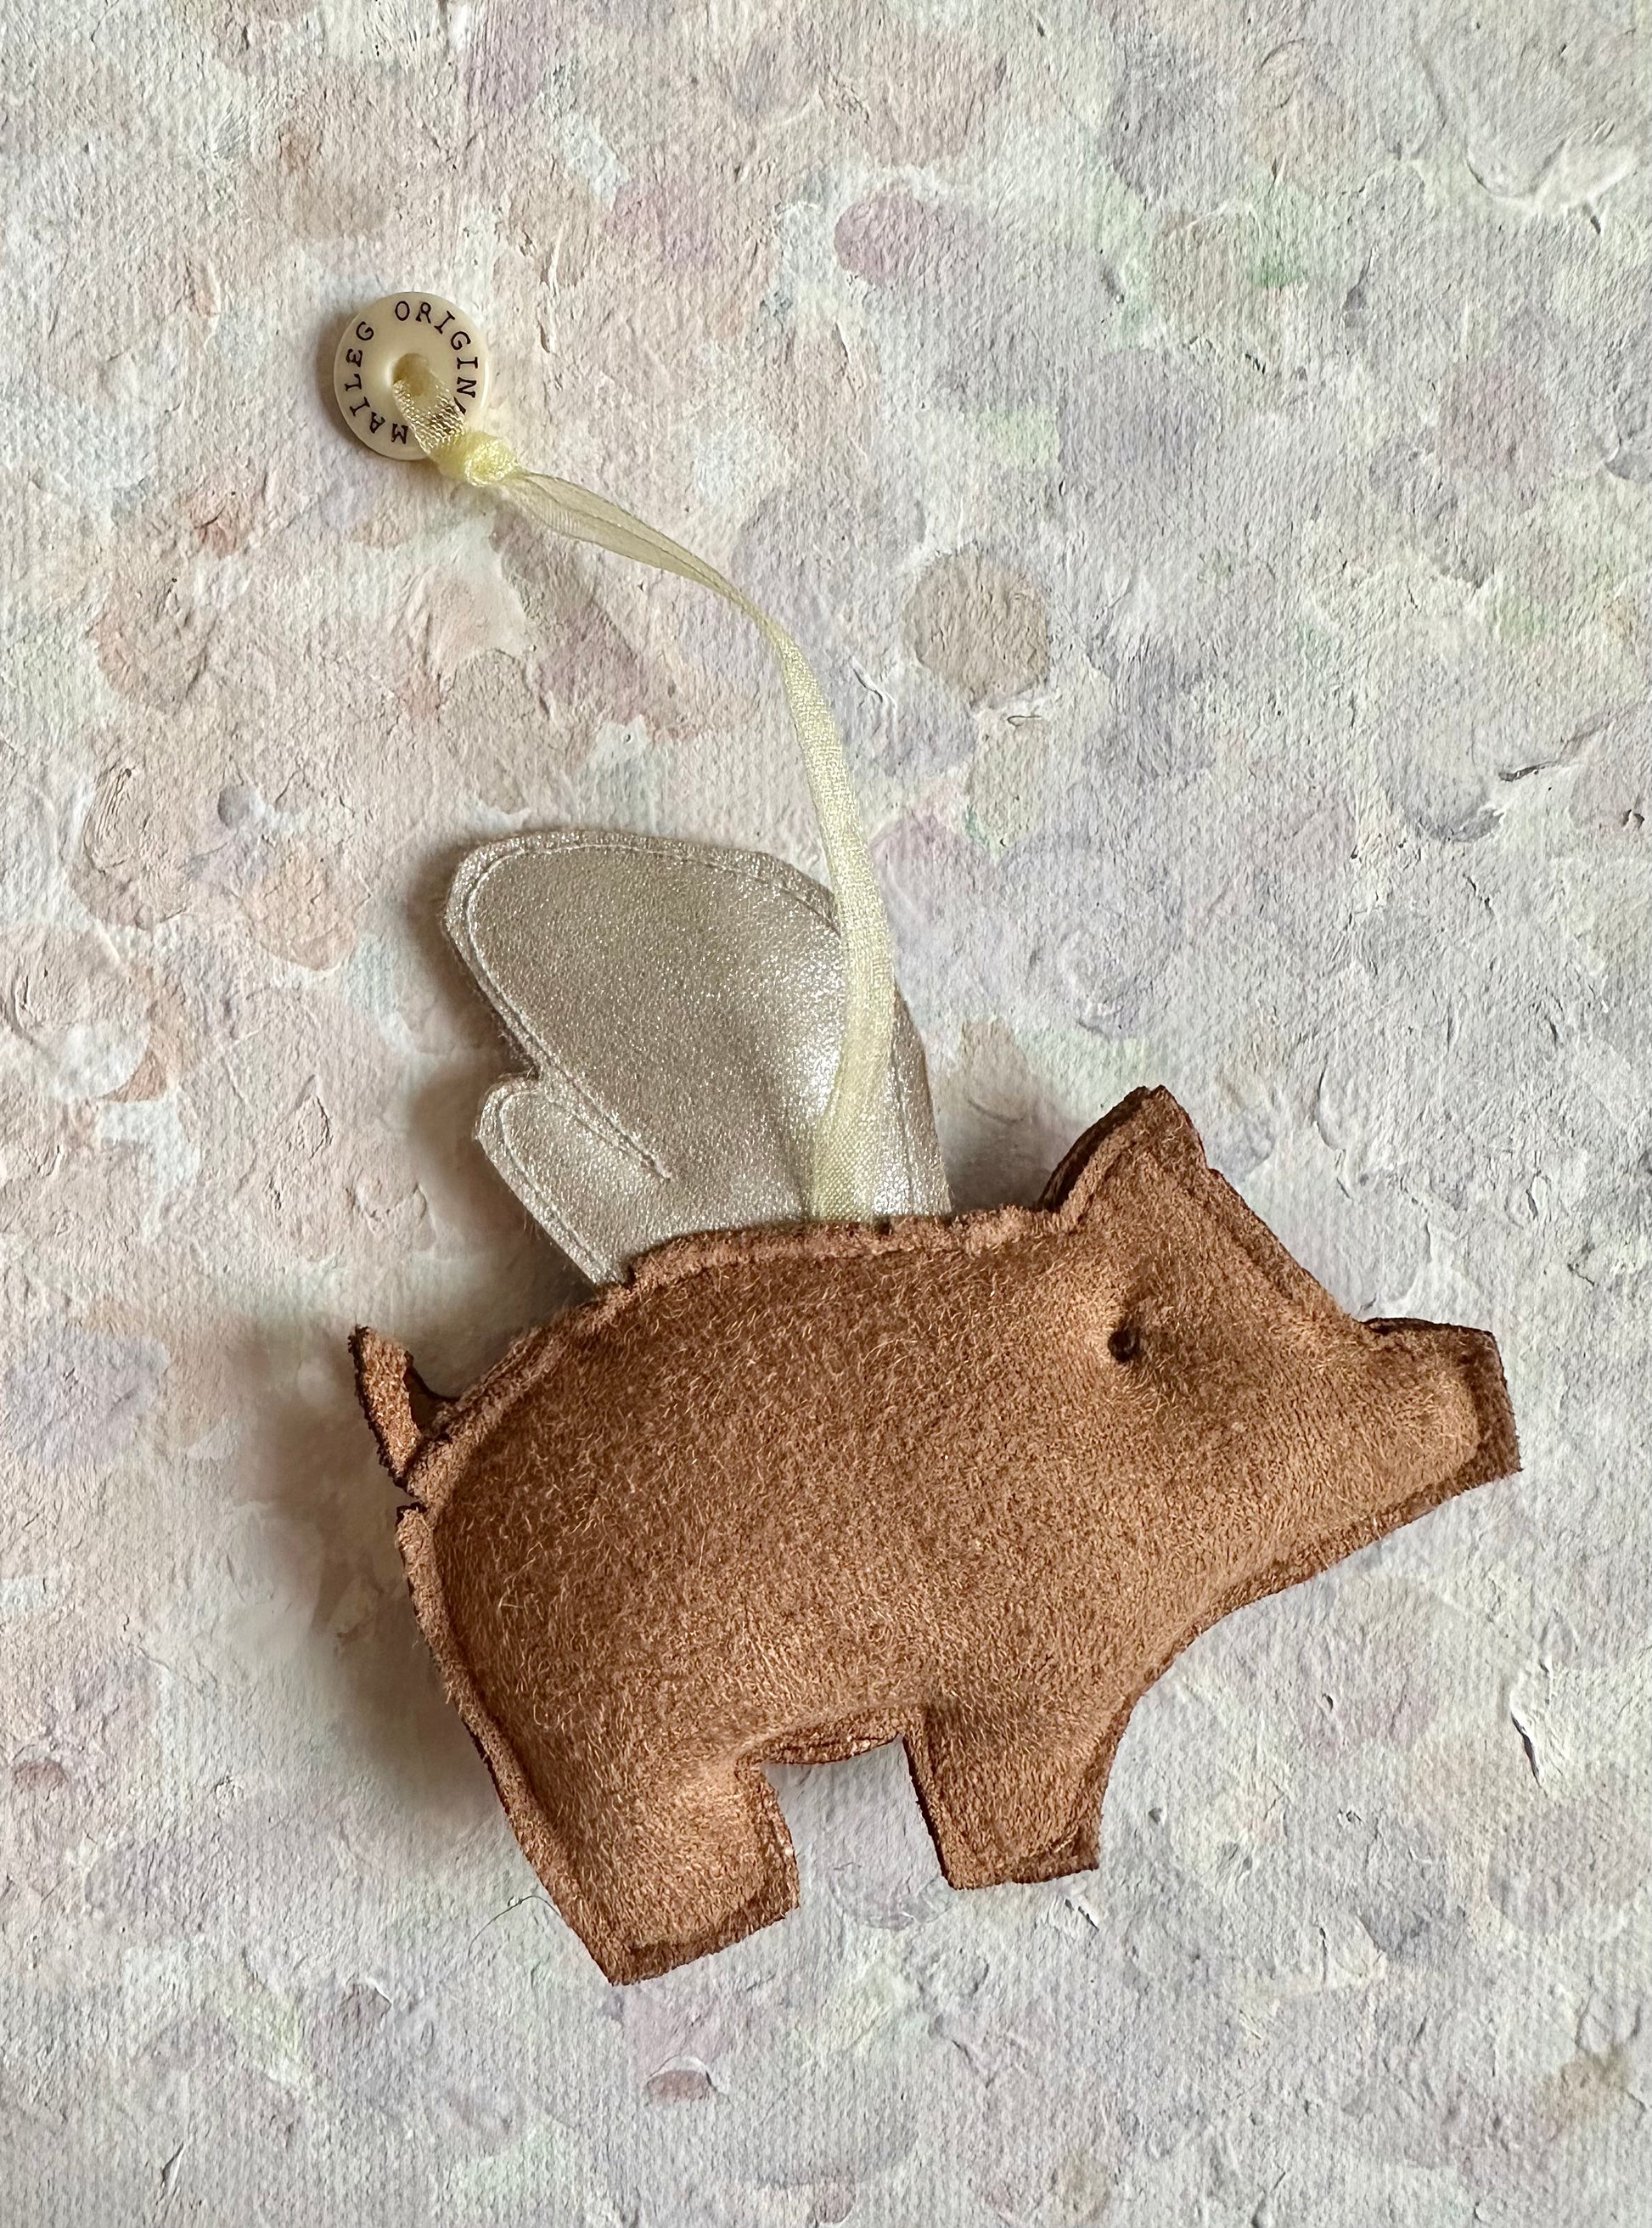 Christmas Ornament Pig - 2014